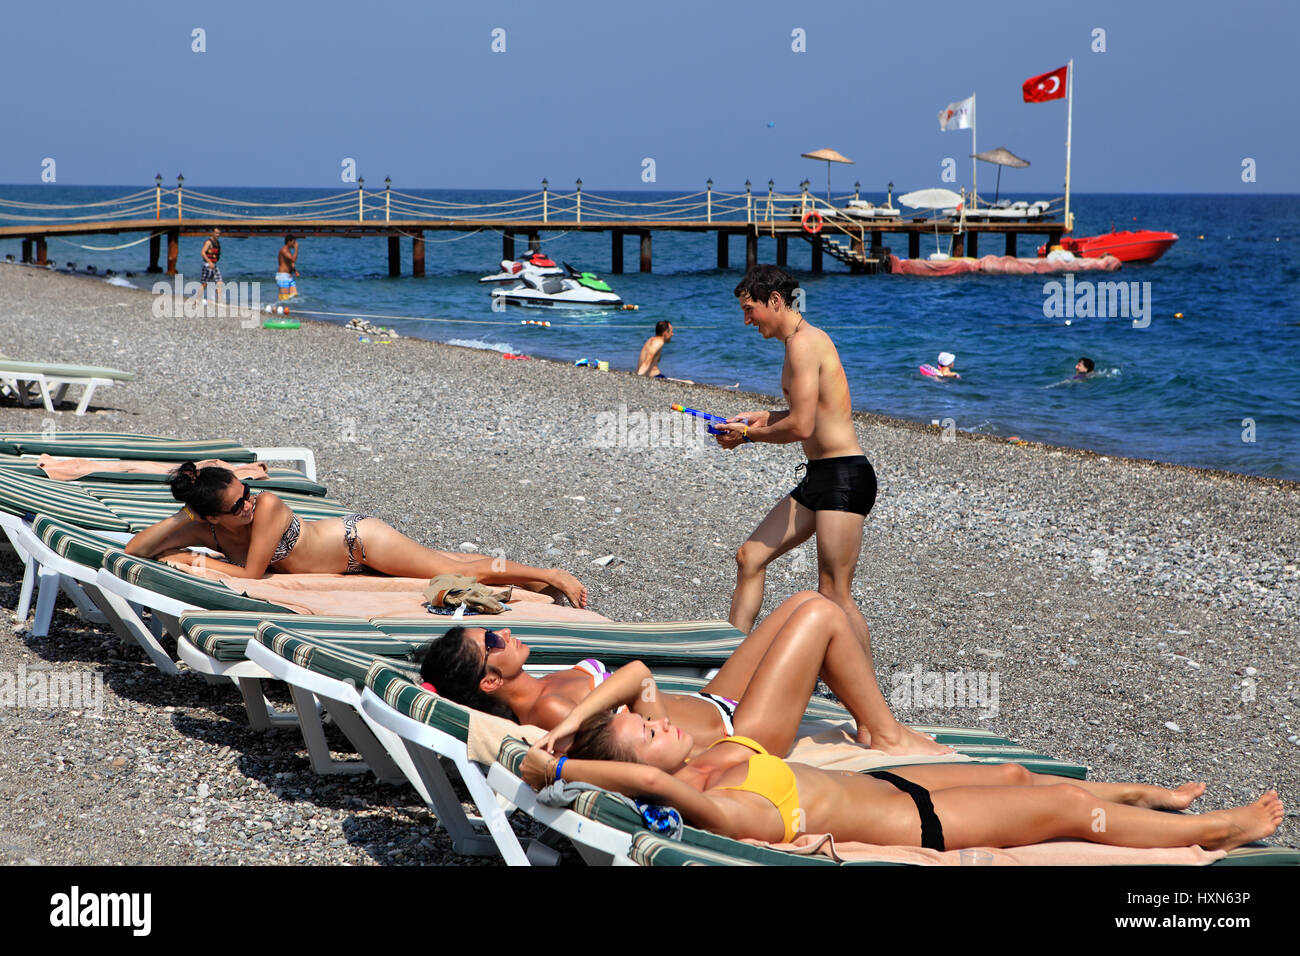 Безопасно ли отдыхать в турции. Турция пляж. Турция пляж люди. Русские в Турции. Отдыхающие в Турции.